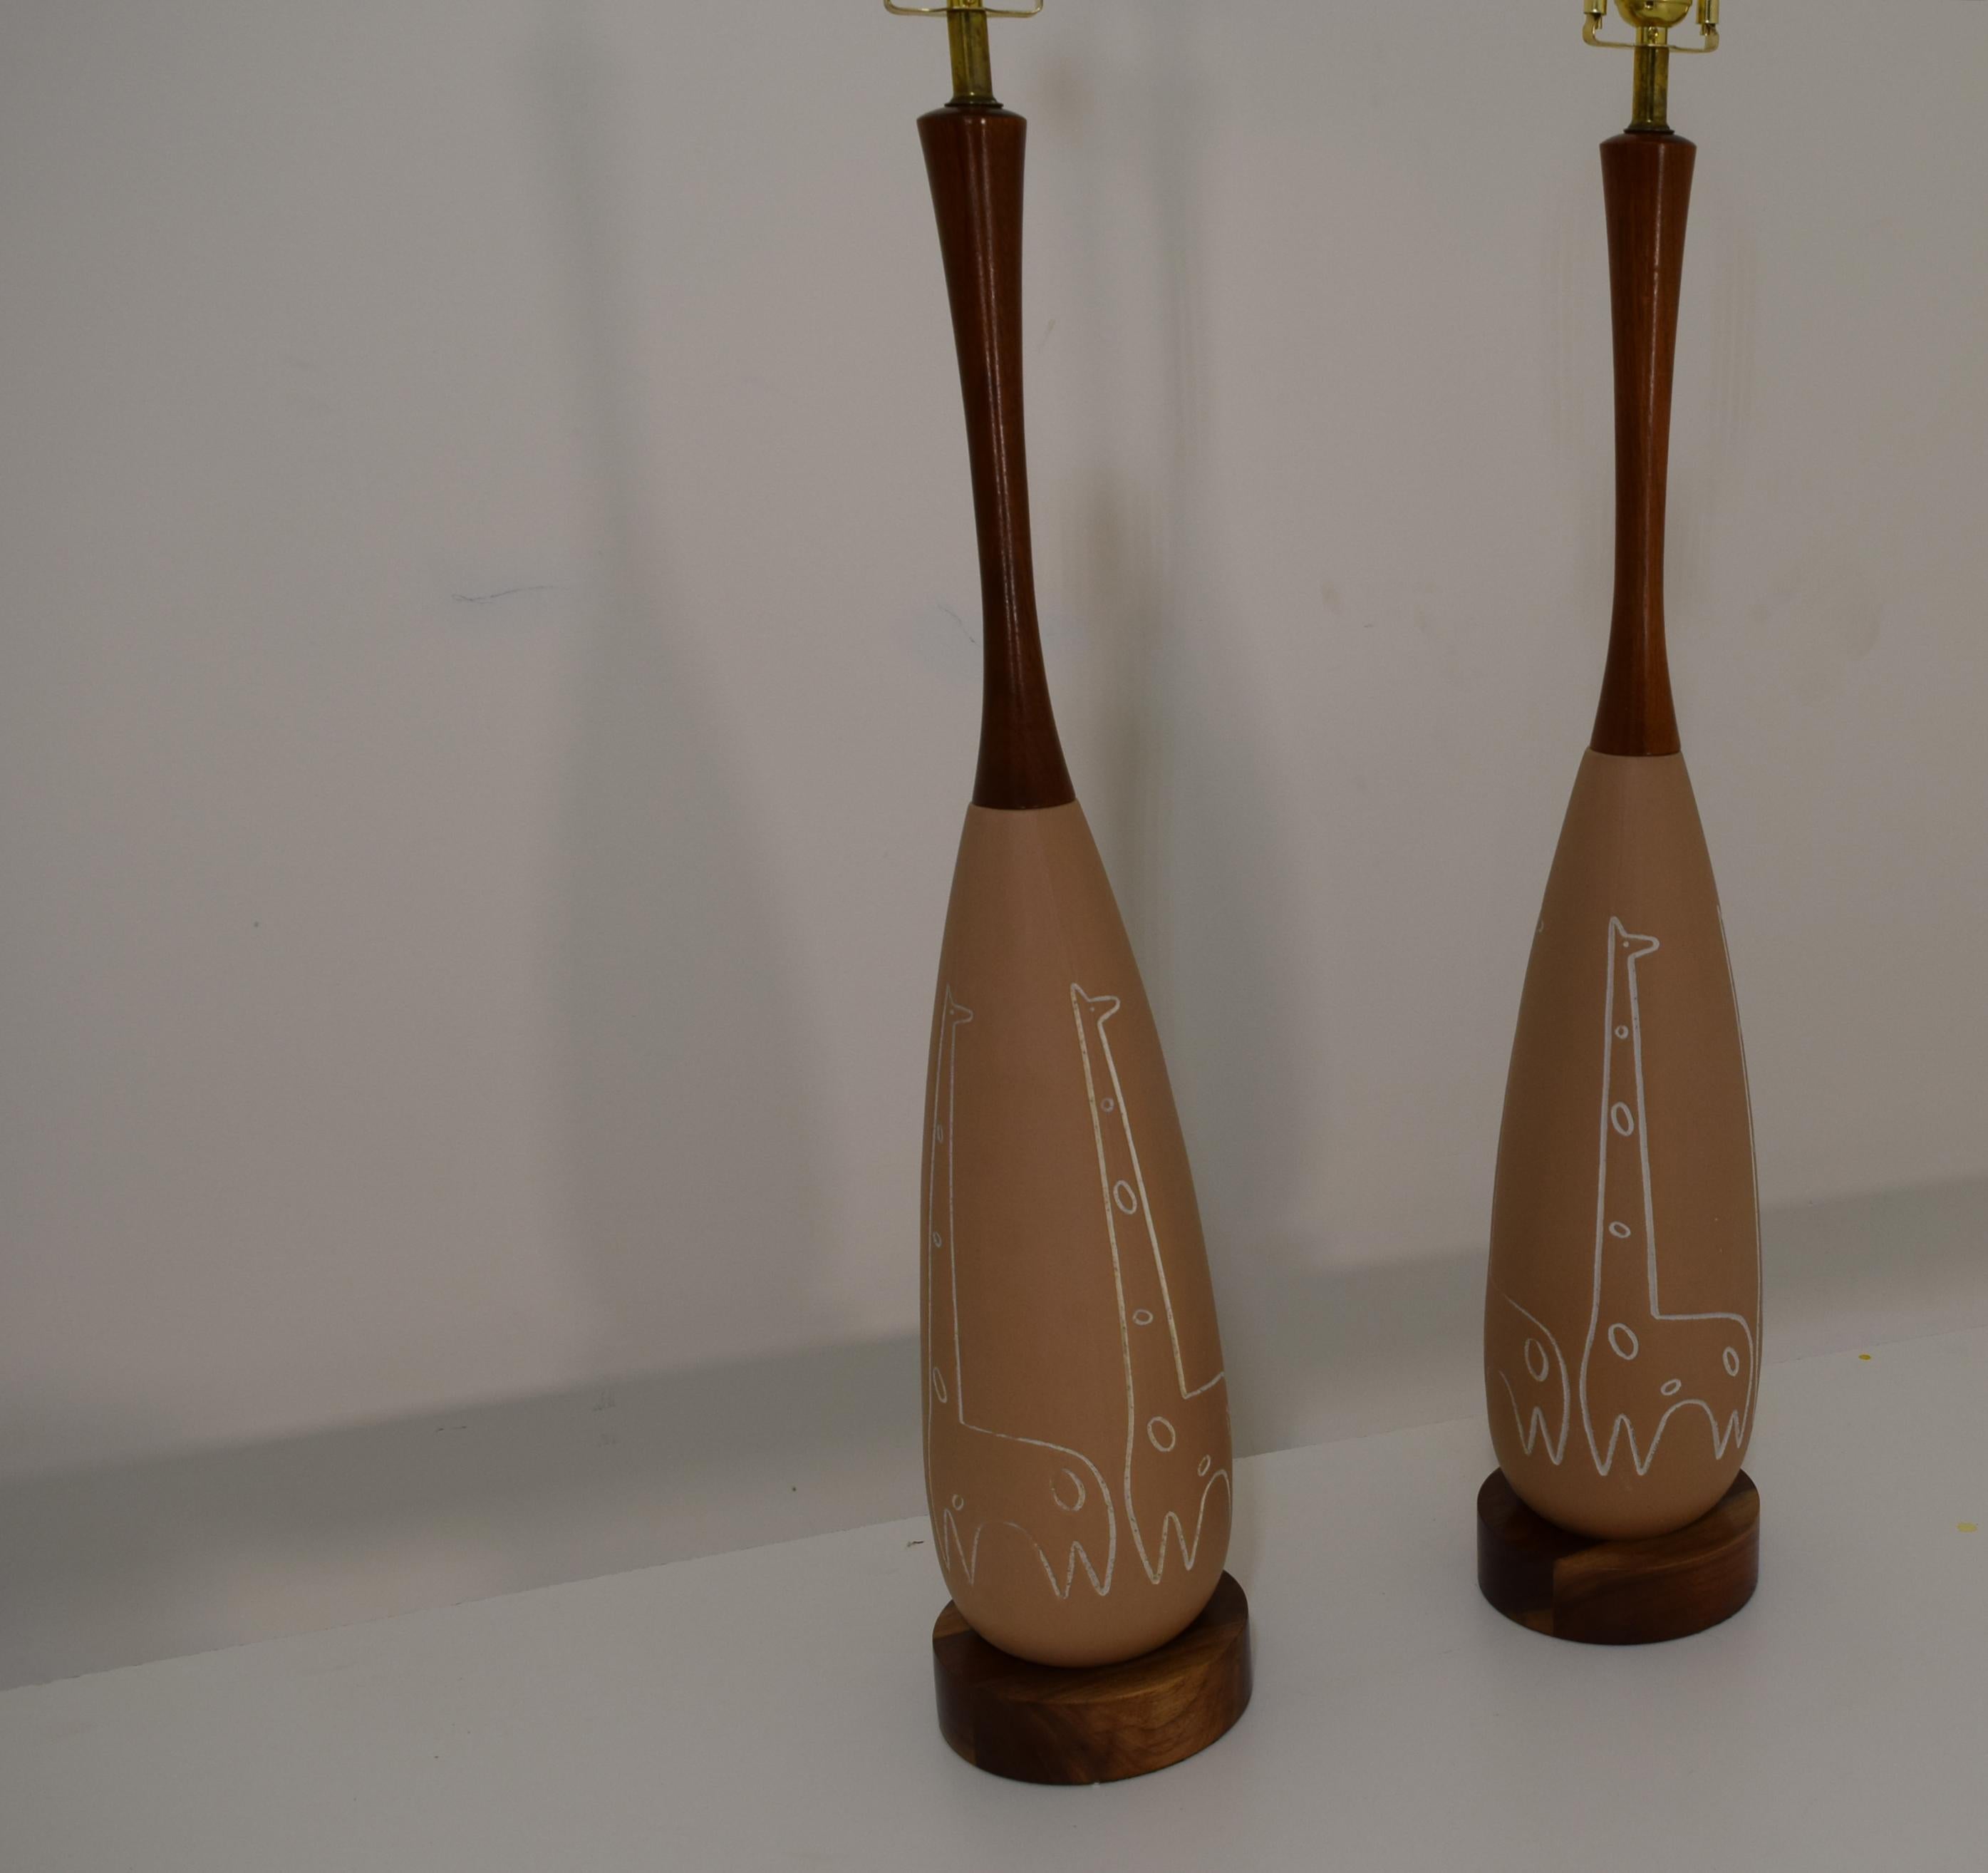 Produites vers 1950, ces lampes de table en céramique présentent un motif animalier - des girafes - incisé dans la céramique. En excellent état avec le noyer fraîchement laqué et le câblage mis à jour ainsi que les douilles à 3 voies et le câblage